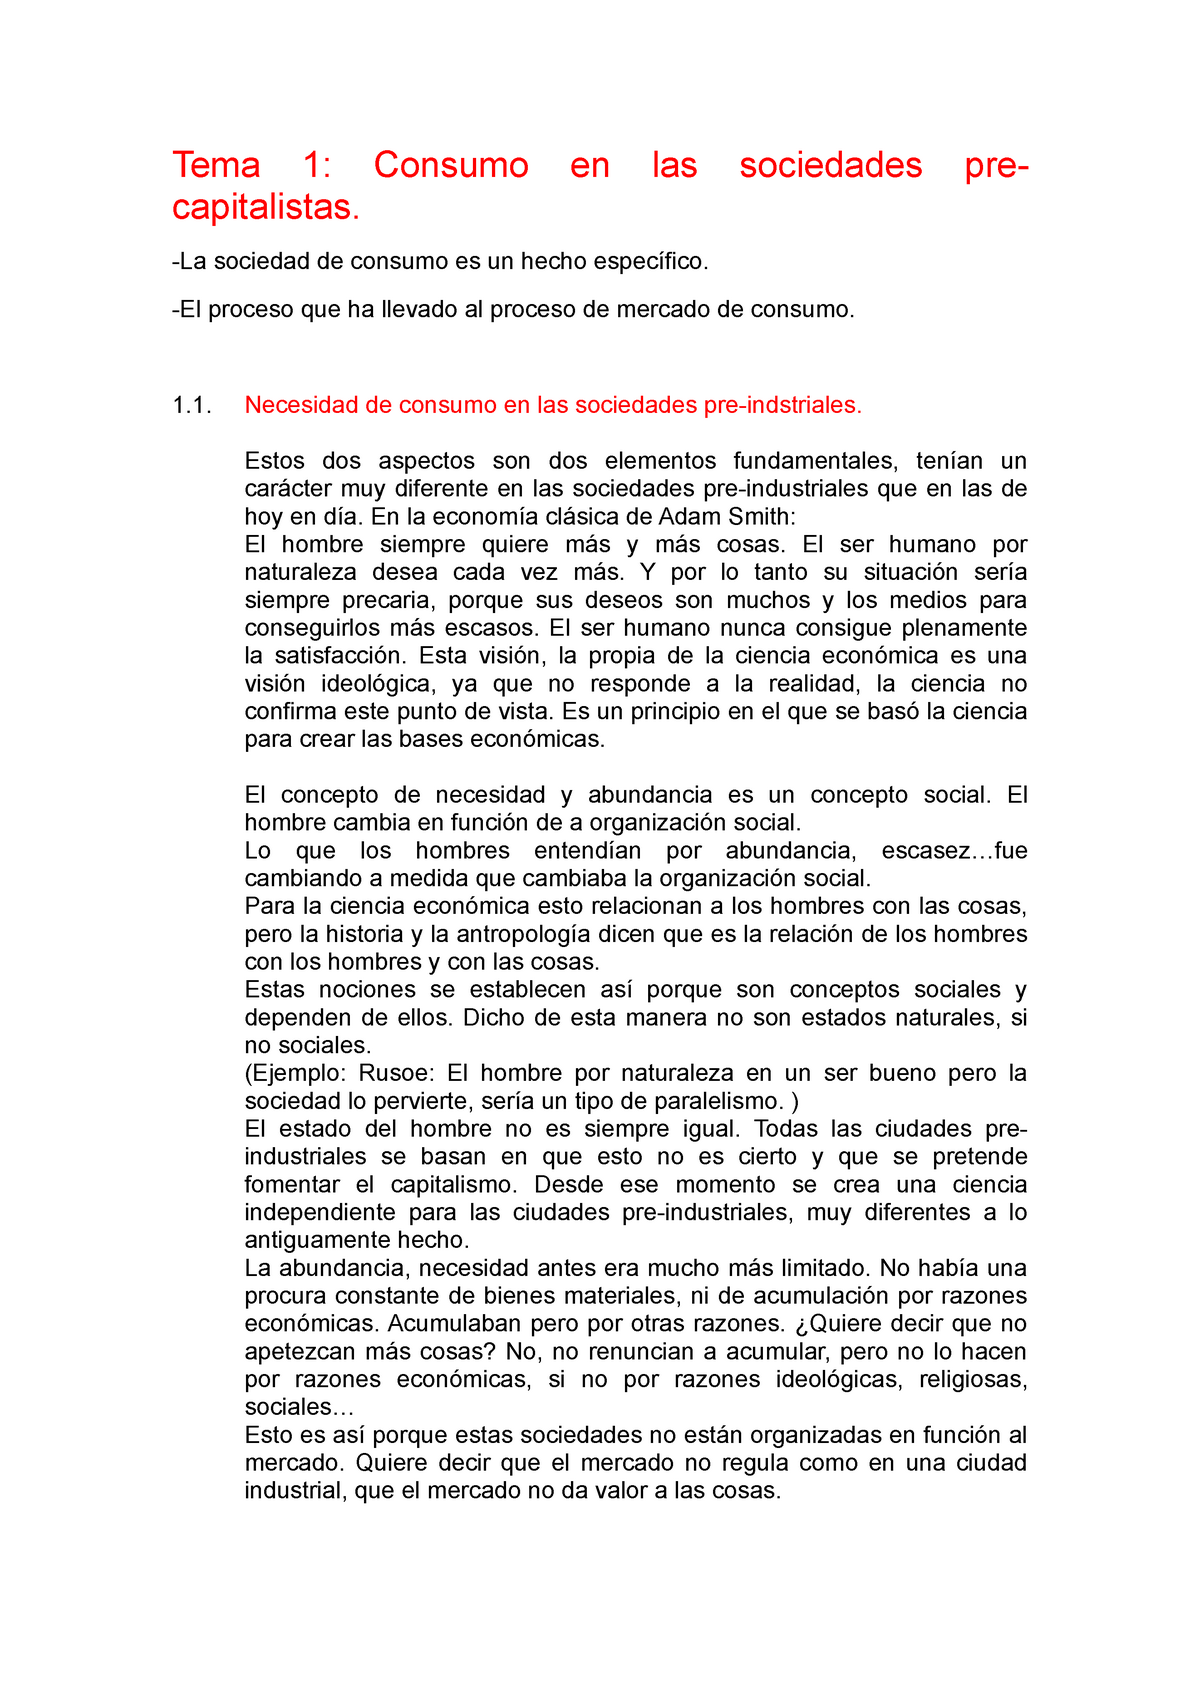 Apuntes Completos De Sociología Año 20122013 Tema 1 Consumo Capitalistas En Las 7714